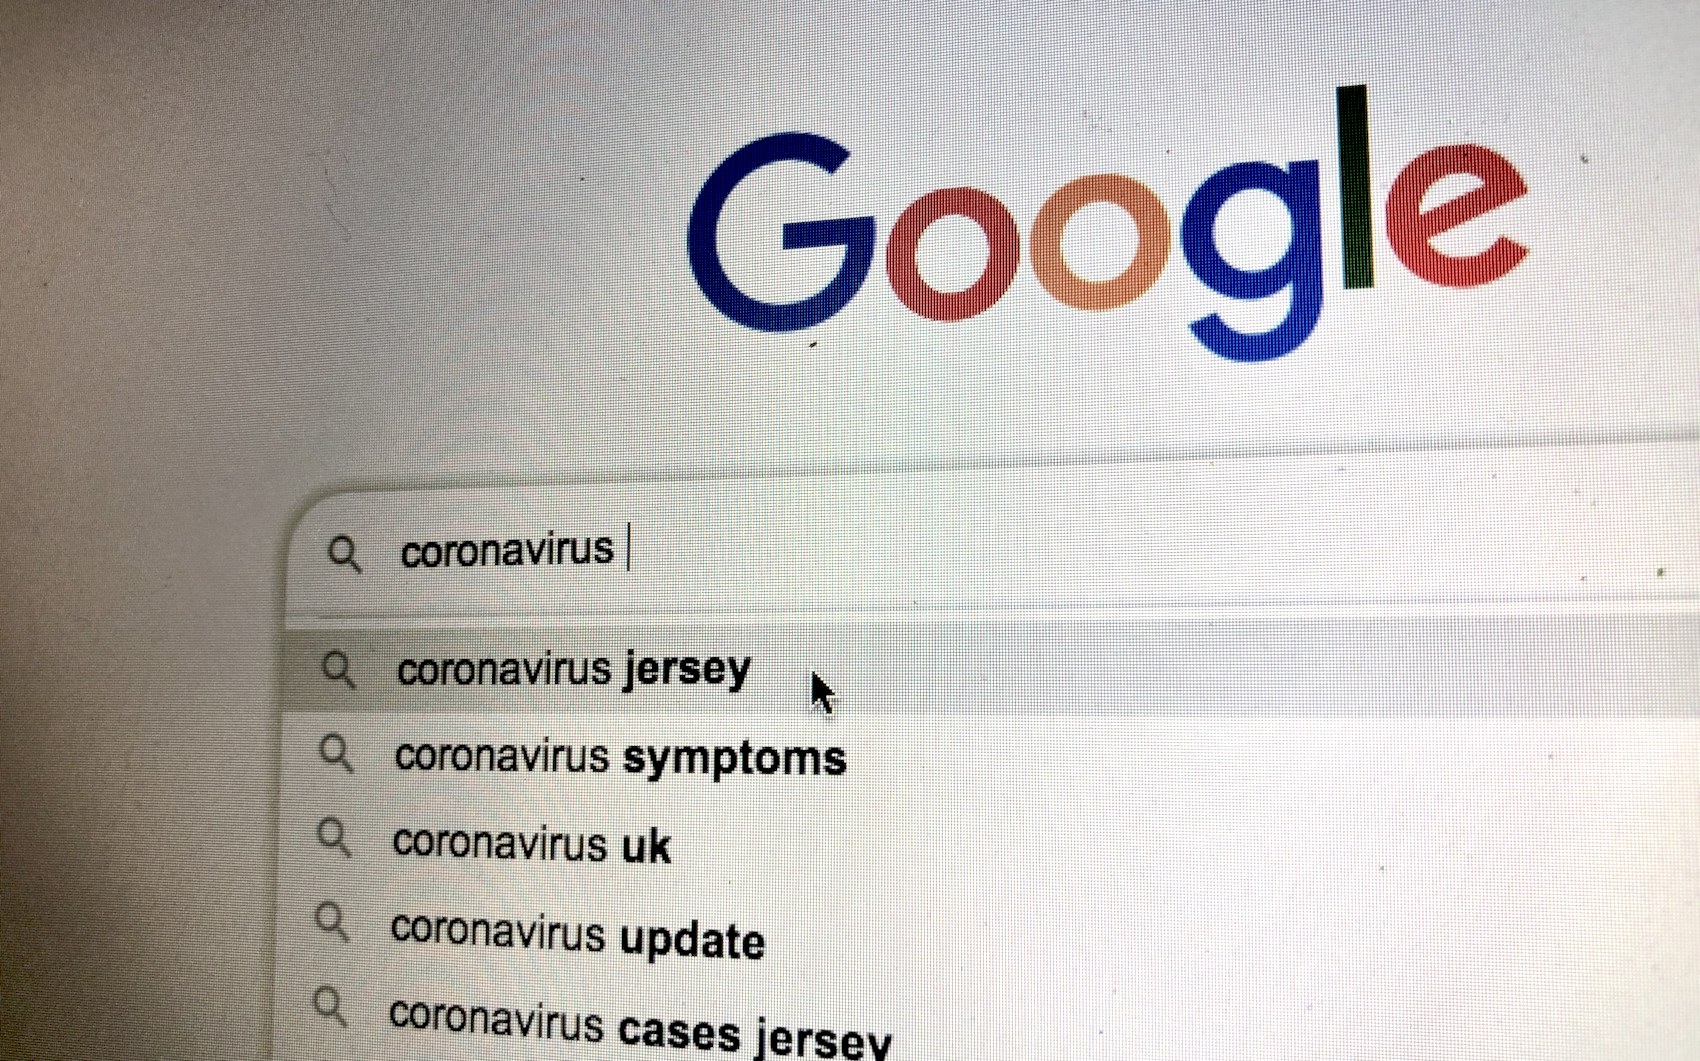 googlecoronavirus.jpg